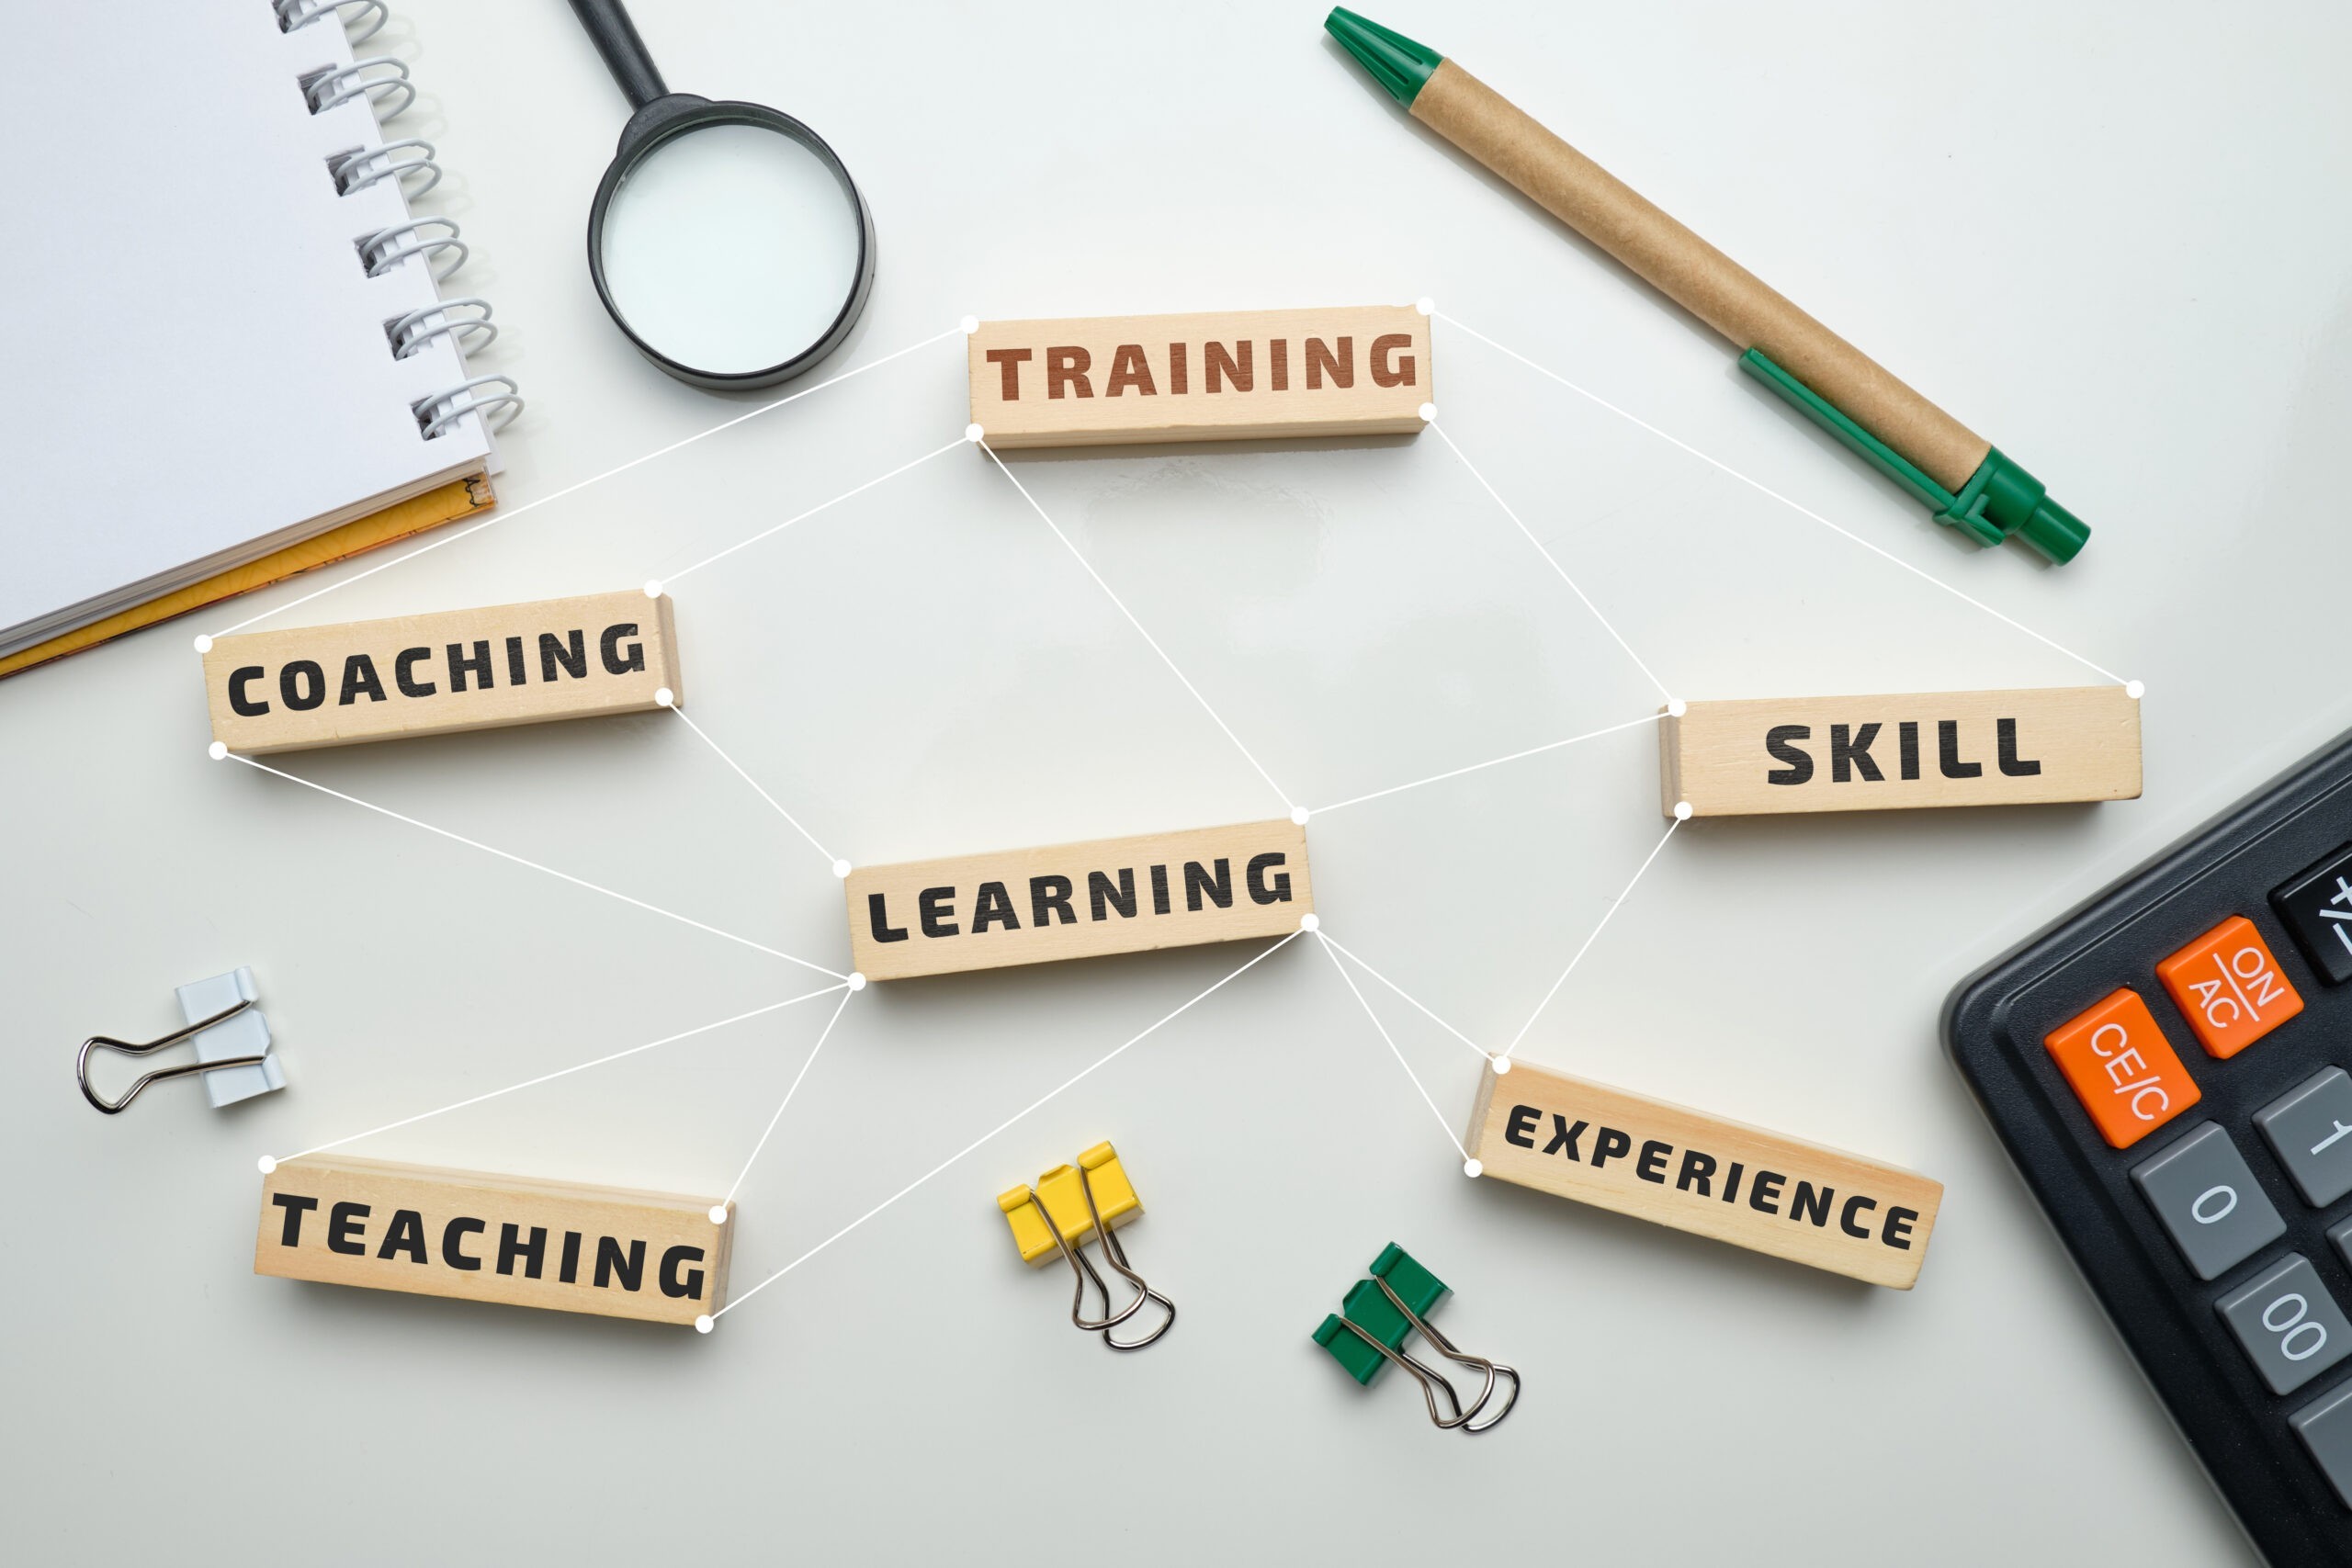 Education, Skills, and Careers